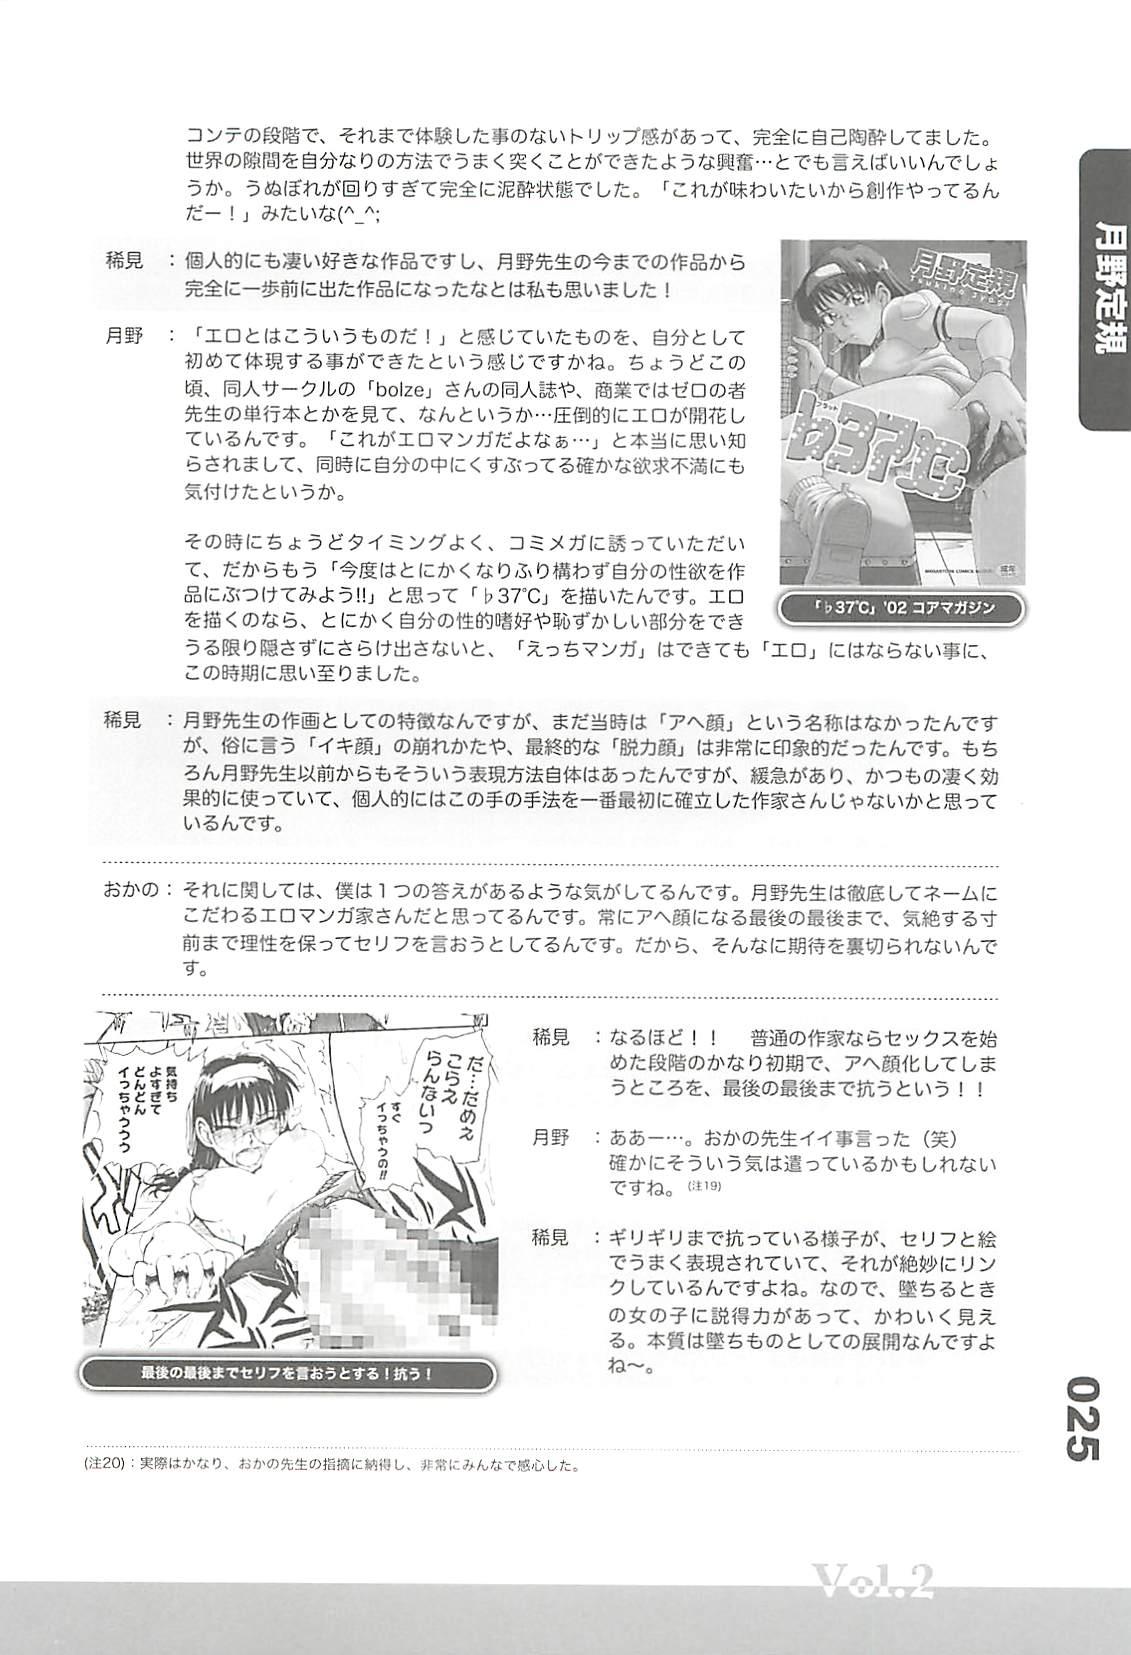 Ero-Manga no Genba Vol. 2 23